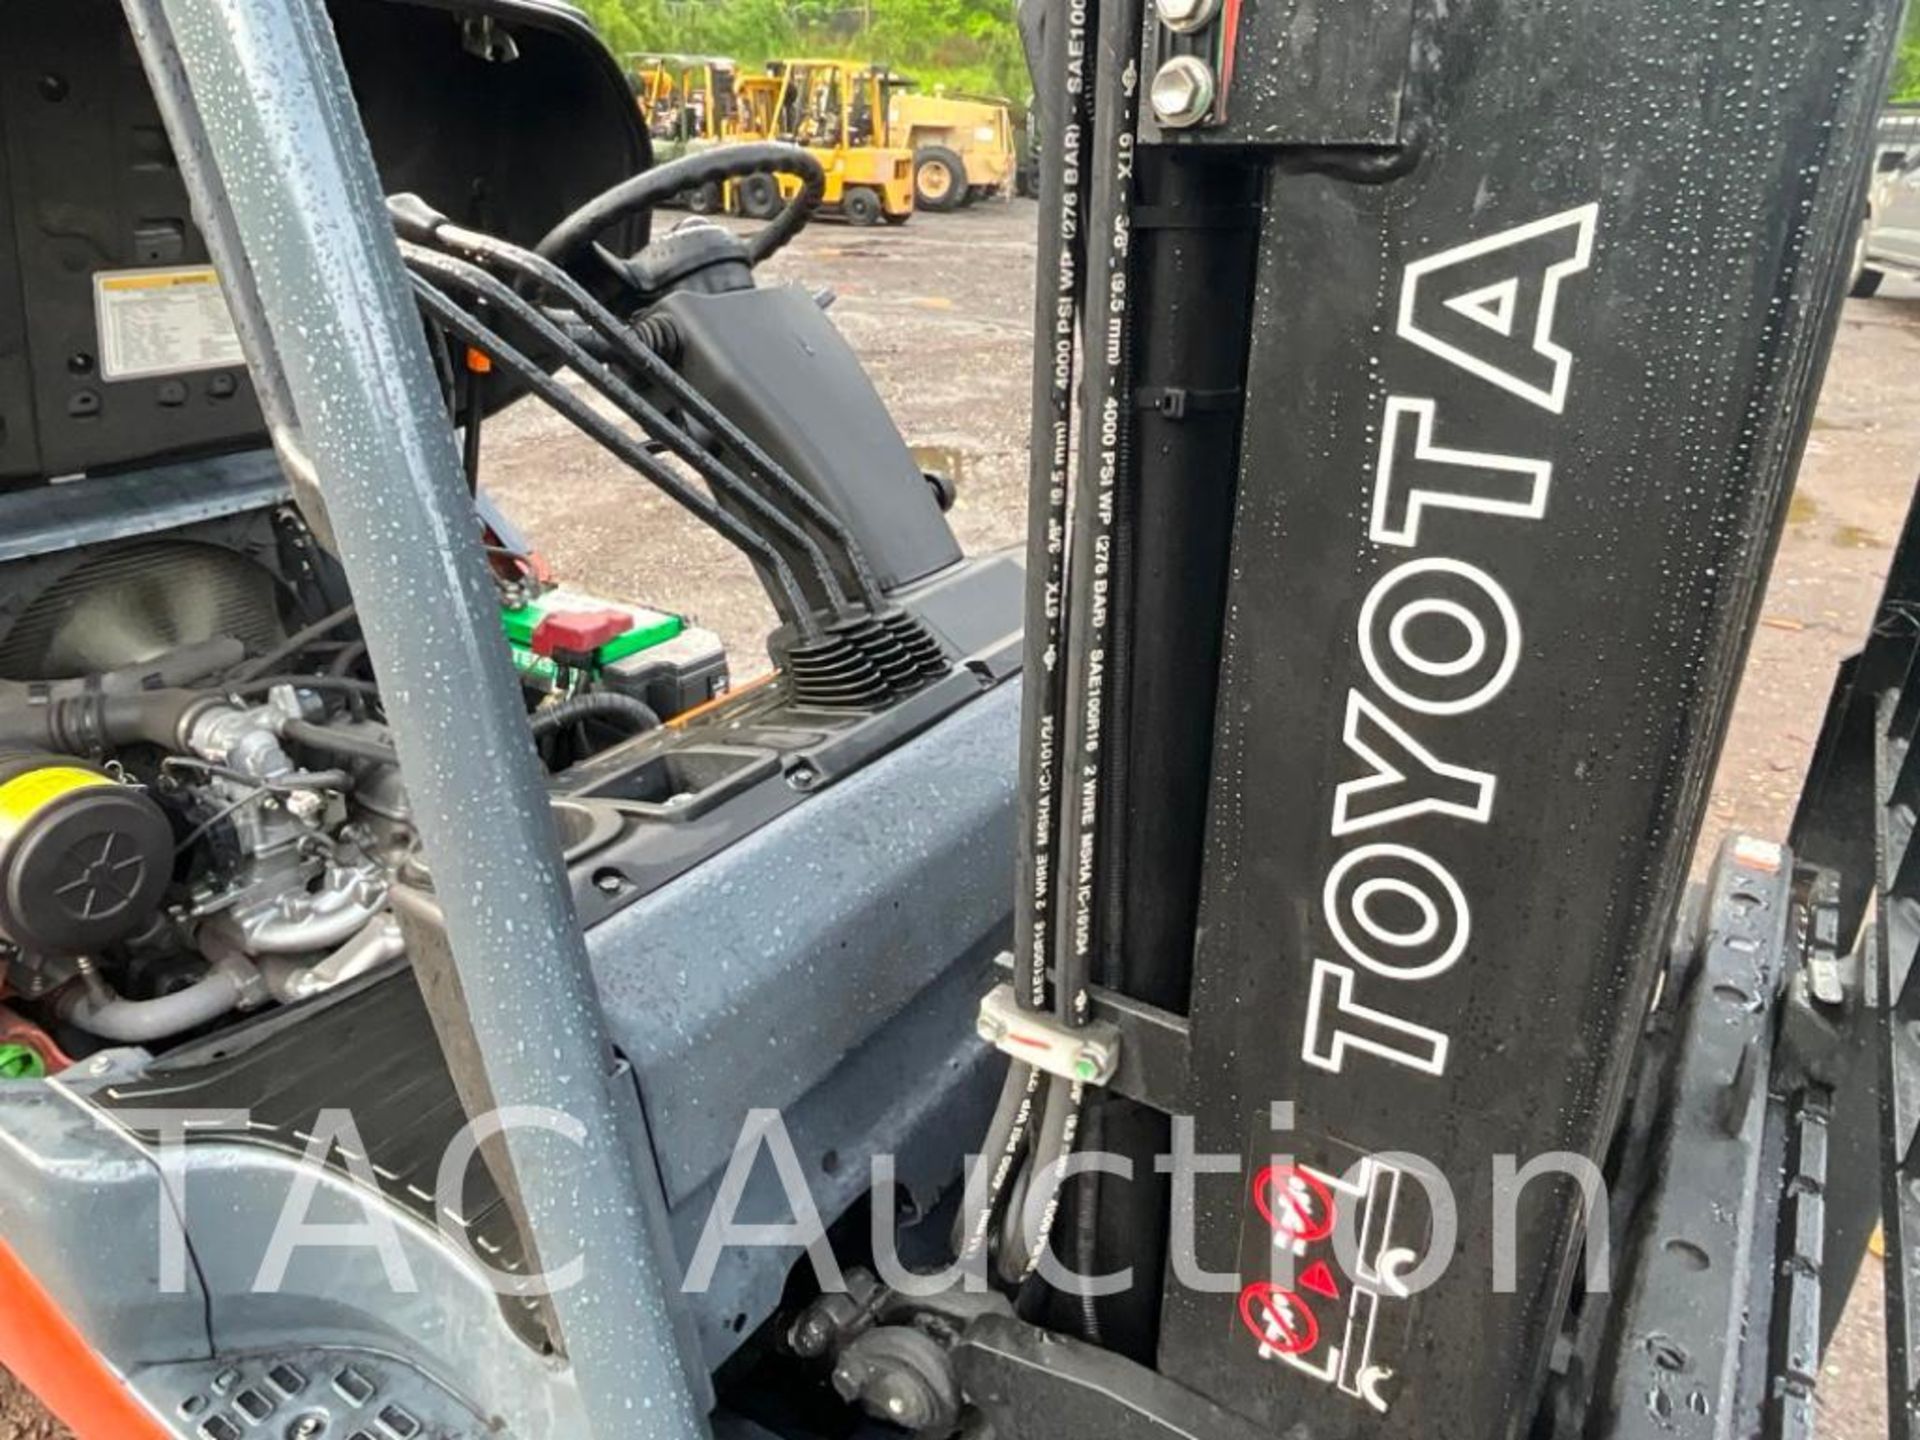 2018 Toyota 8FGCU30 6000lb Forklift - Image 20 of 23